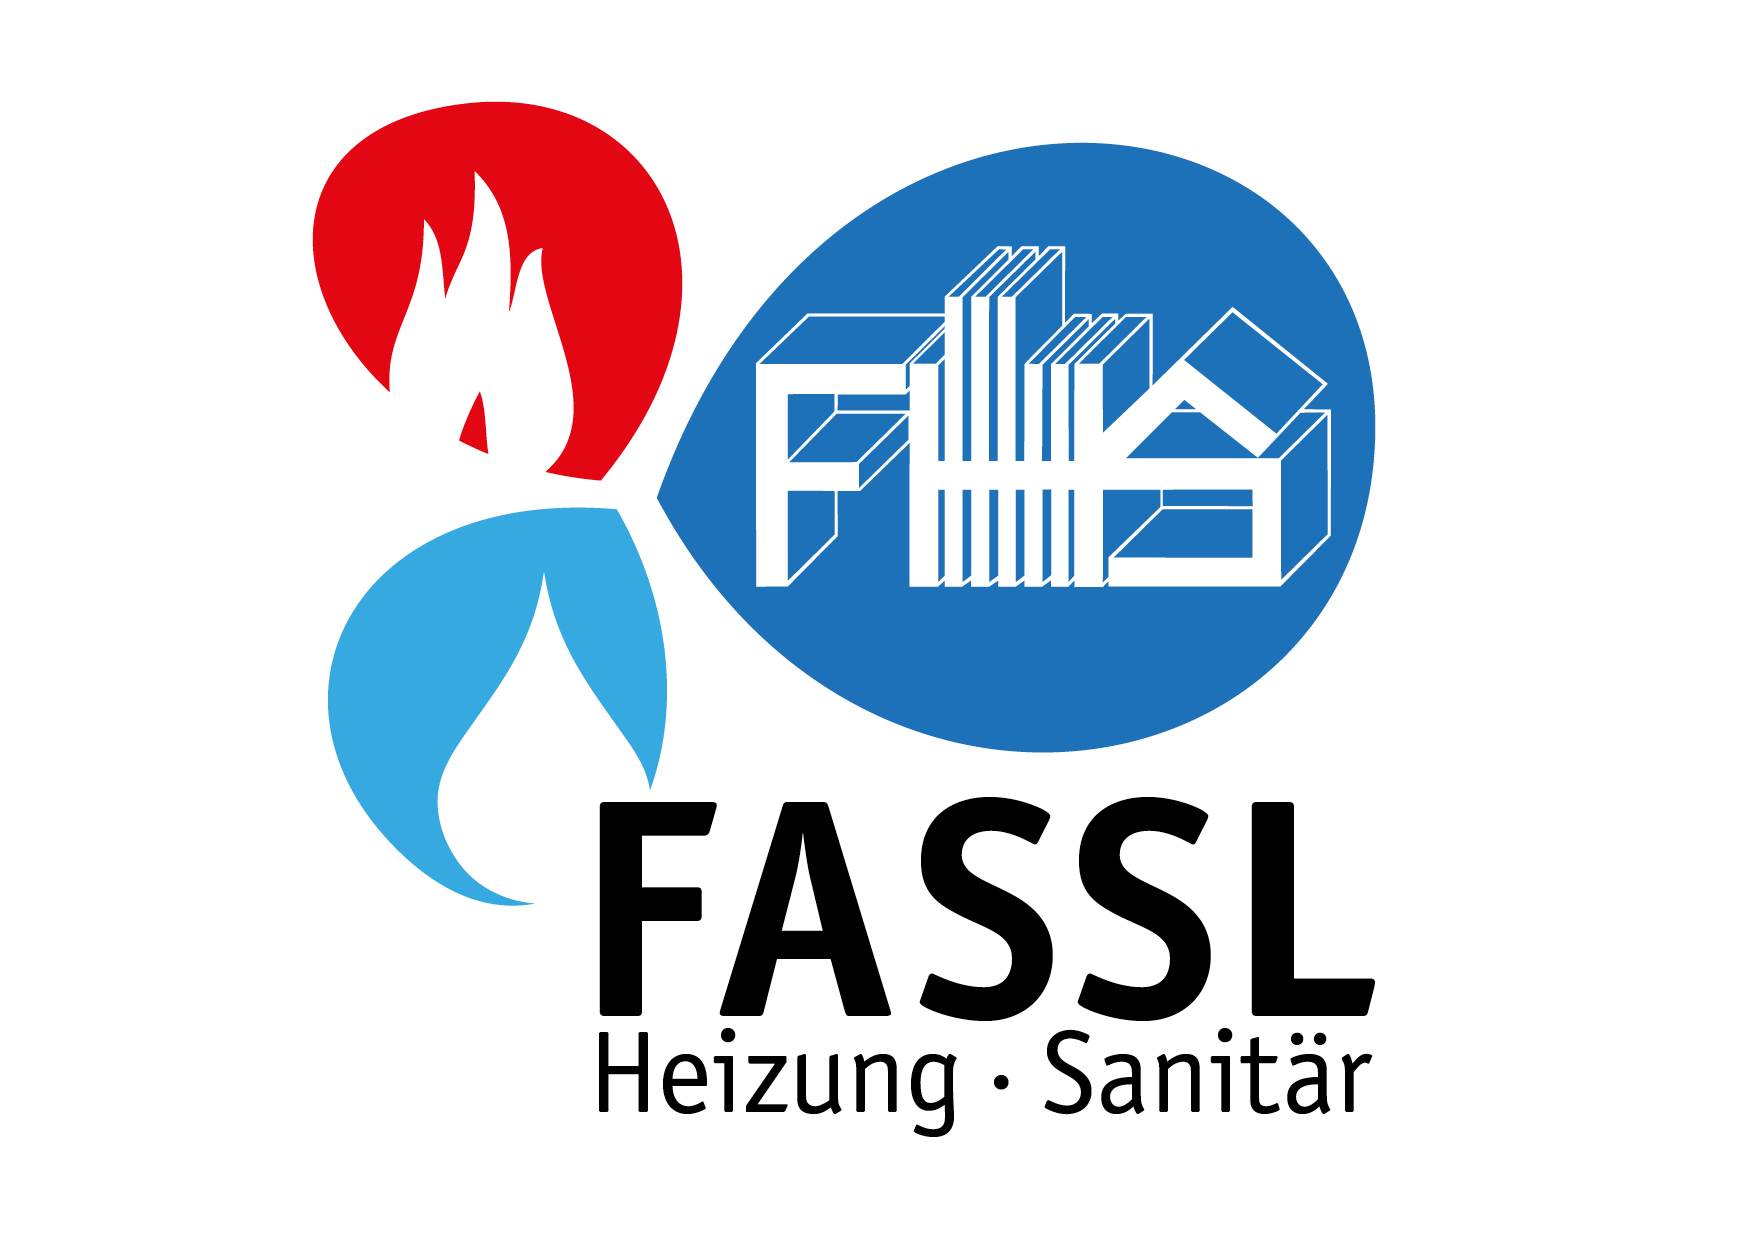 FirmenlogoFHS Fassl - Felix Fassl Sasbach